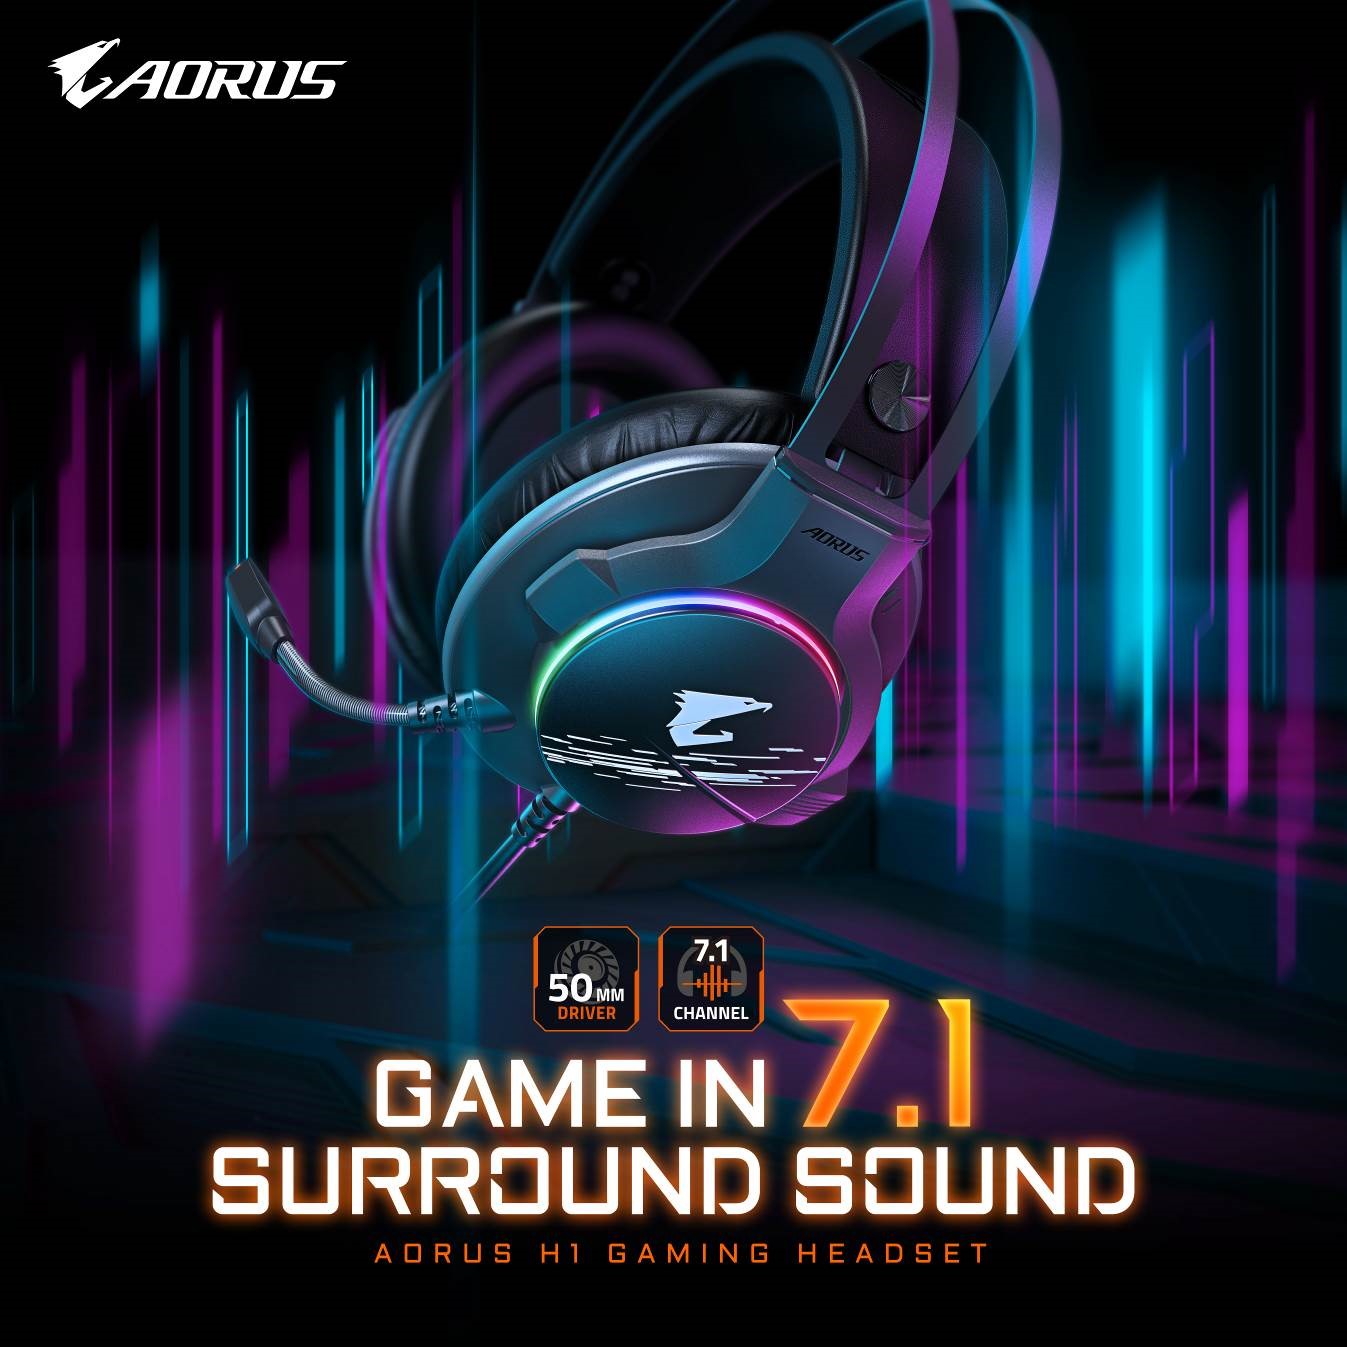 GIGABYTE anunció el nuevo auricular para juegos - AORUS H1. AORUS H1 adopta drivers de 50mm y construye un sonido envolvente virtual 7.1